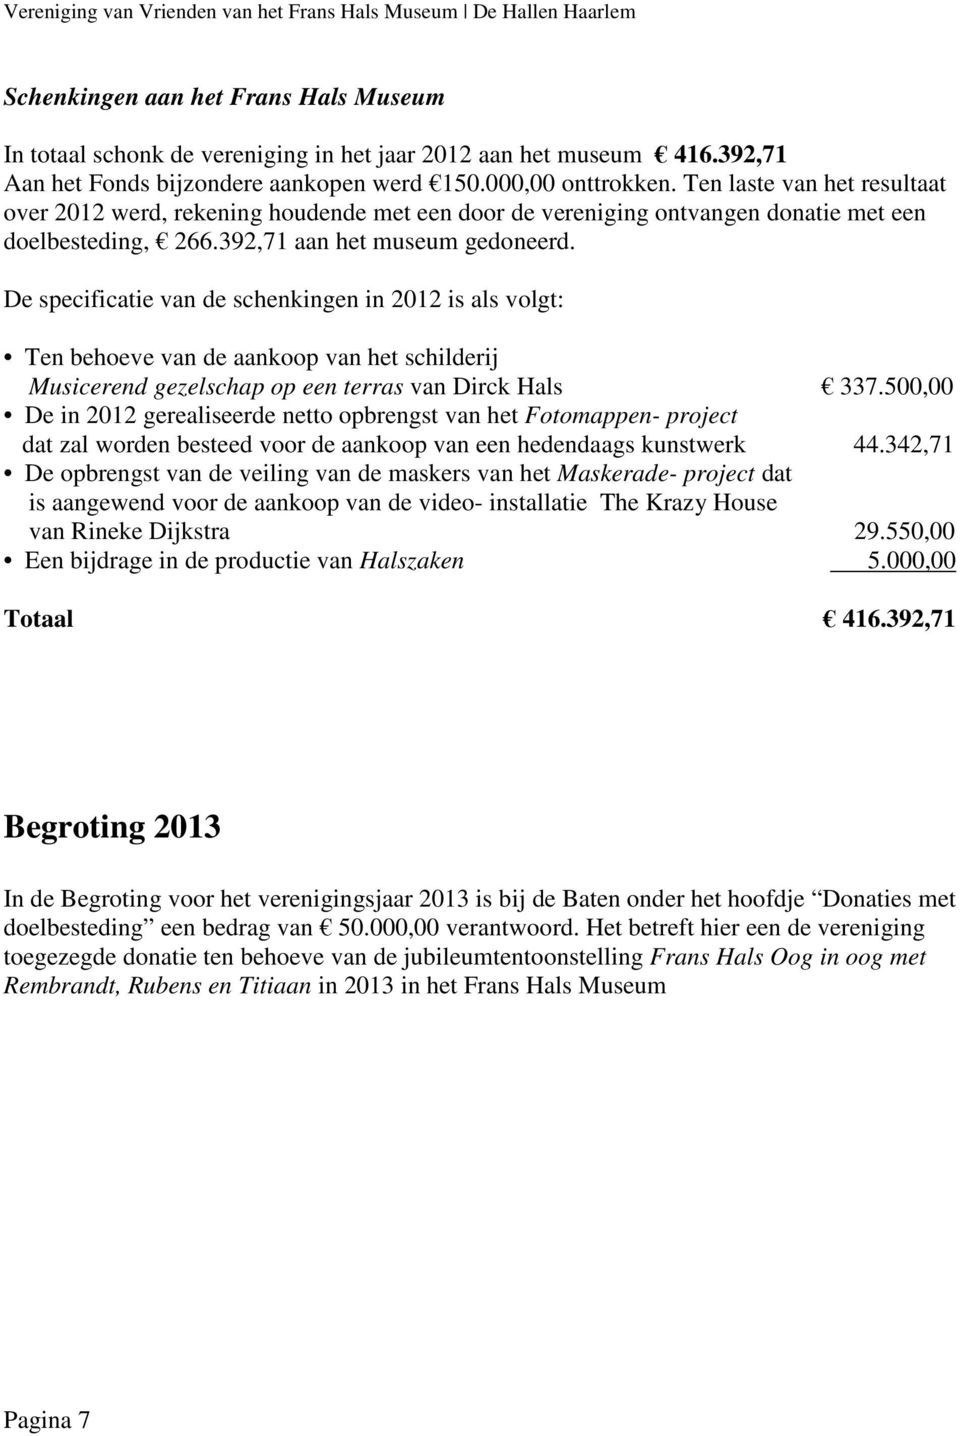 De specificatie van de schenkingen in 2012 is als volgt: Ten behoeve van de aankoop van het schilderij Musicerend gezelschap op een terras van Dirck Hals 337.